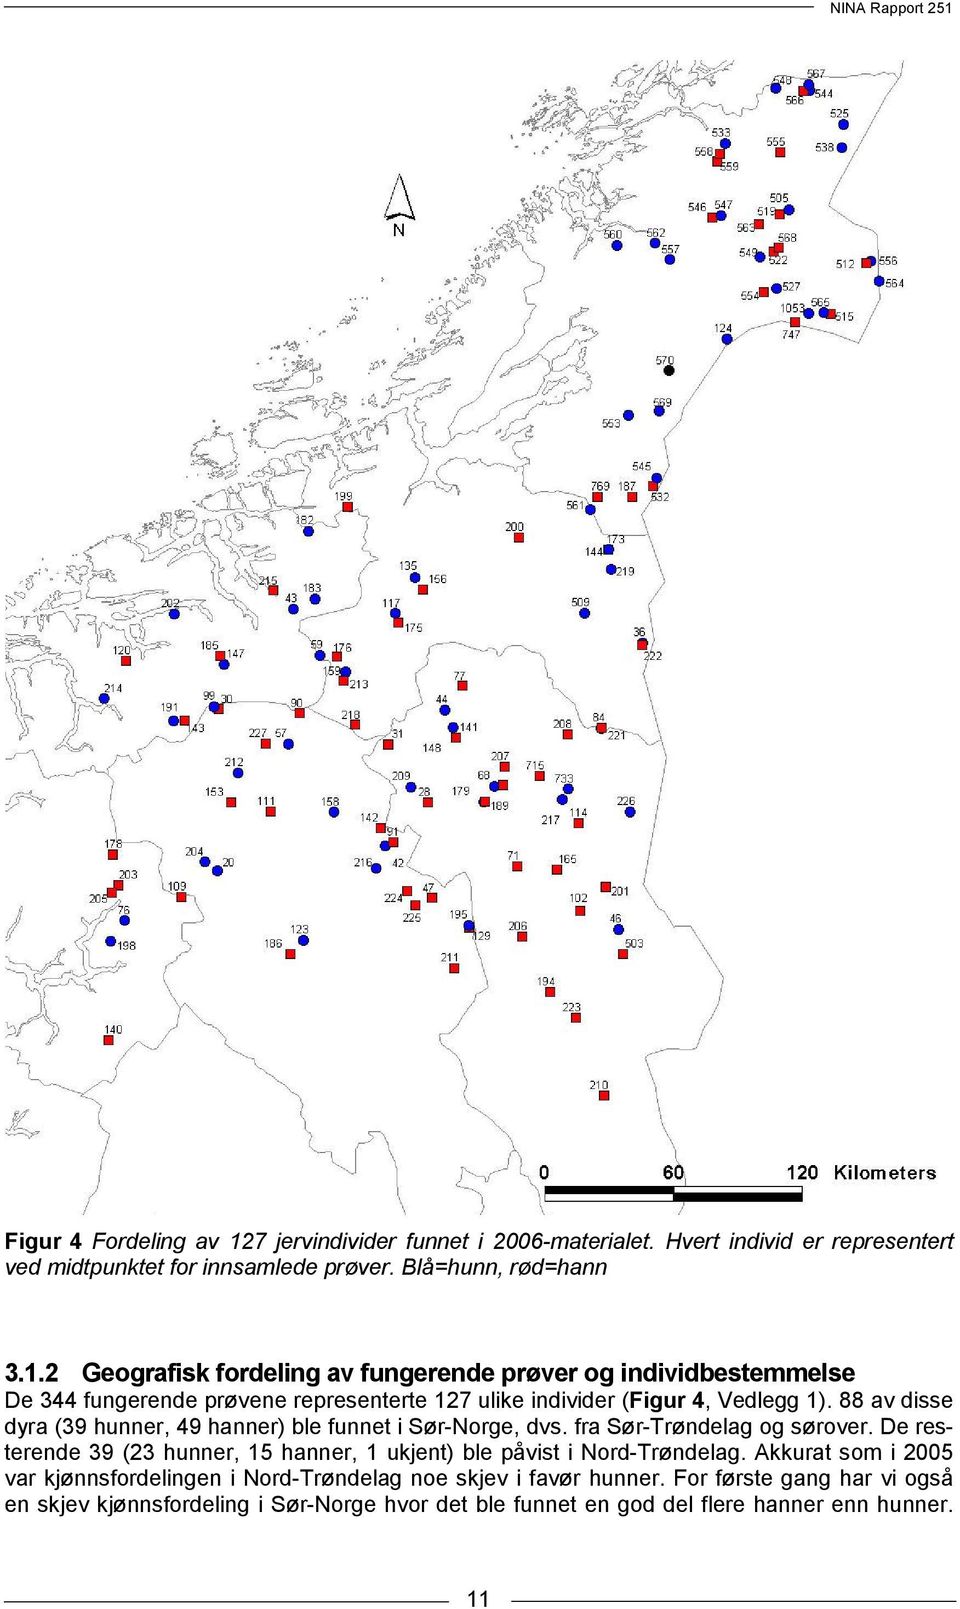 De resterende 39 (23 hunner, 15 hanner, 1 ukjent) ble påvist i Nord-Trøndelag. Akkurat som i 2005 var kjønnsfordelingen i Nord-Trøndelag noe skjev i favør hunner.